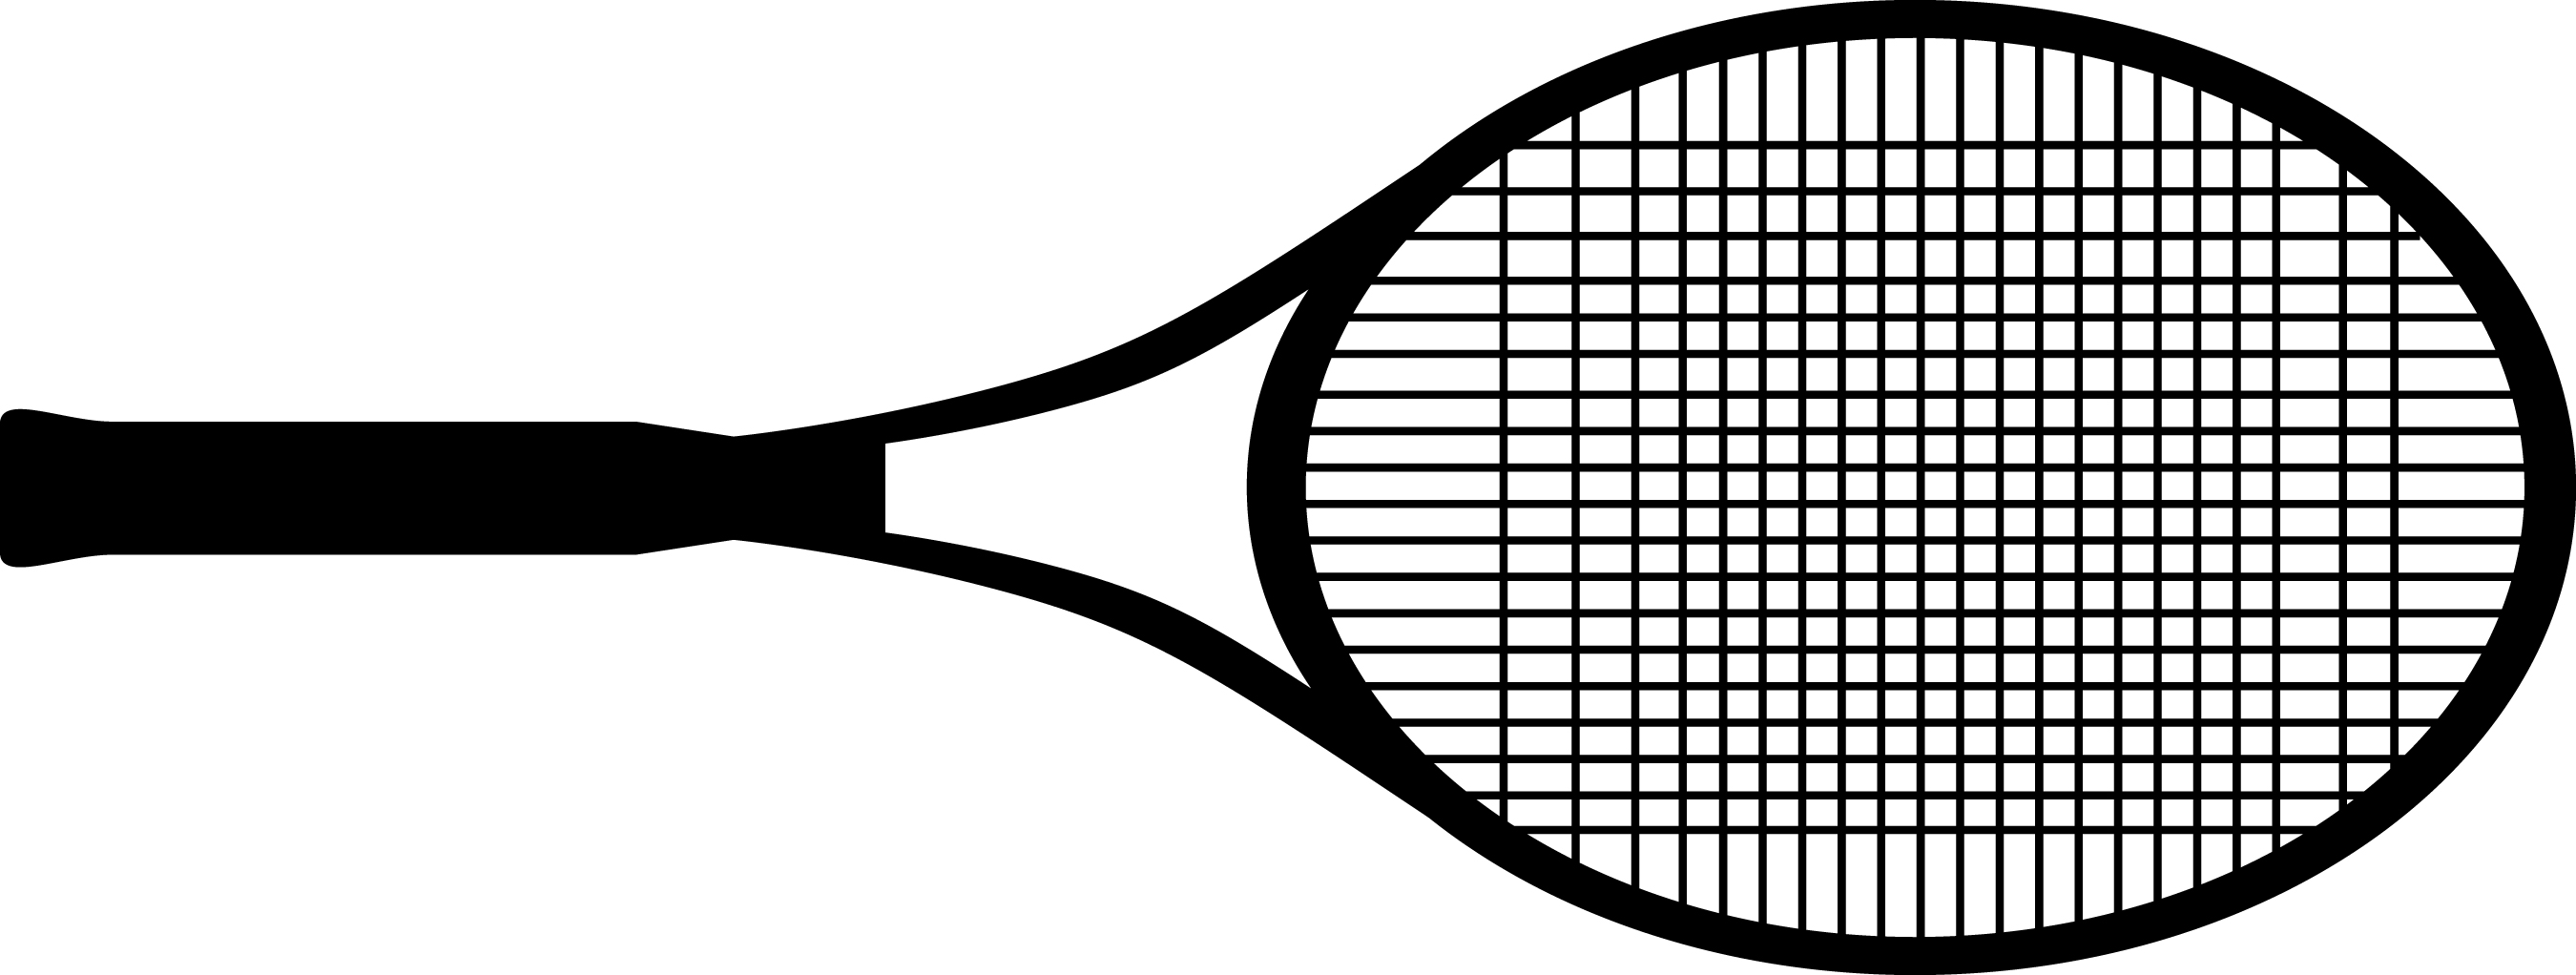 Tennis Racket Clip Art & Tennis Racket Clip Art Clip Art Images.